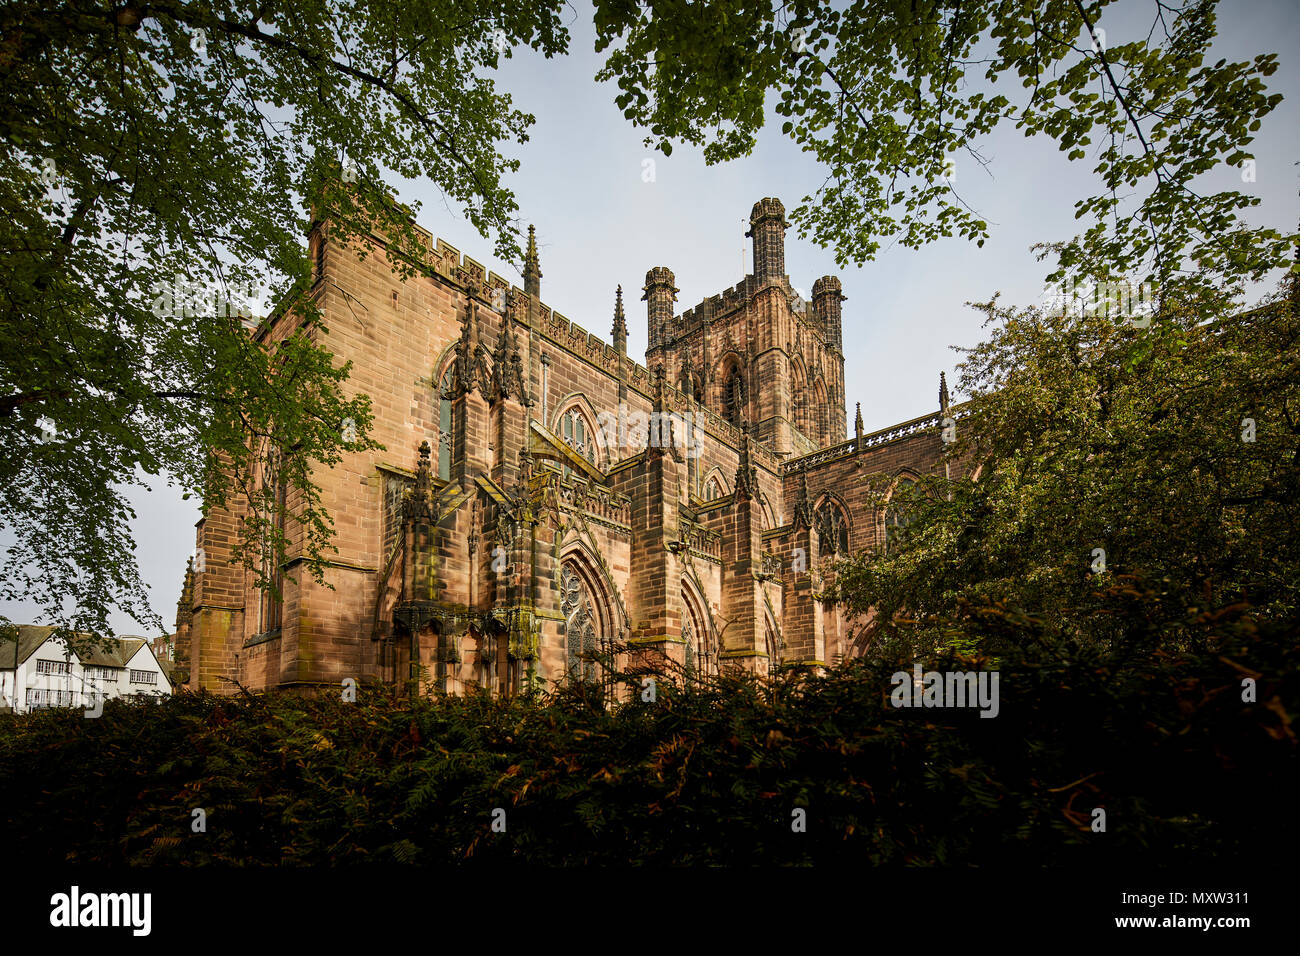 Sehenswürdigkeiten romanische gotische Fassade Kathedrale von Chester, Cheshire, England, Grad I touristische Attraktion im Zentrum der Stadt und die römische Stadtmauer aufgeführt Stockfoto